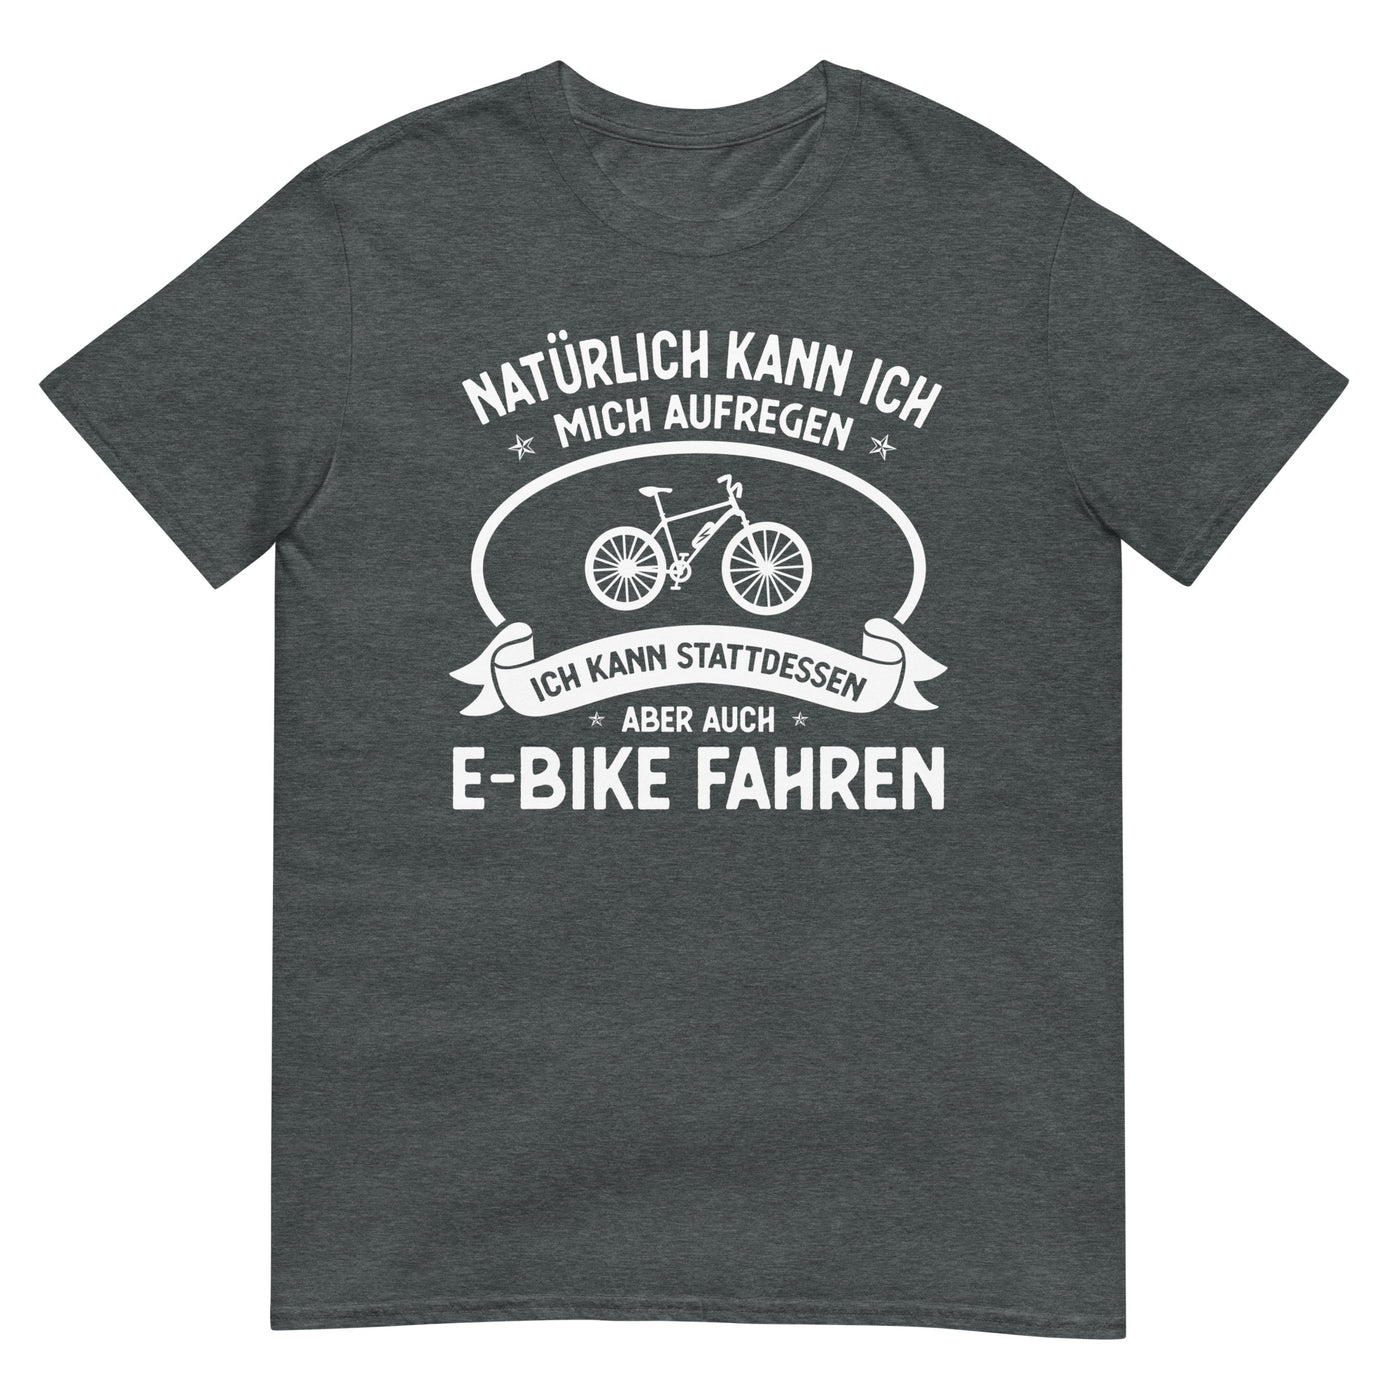 Naturlich Kann Ich Mich Aufregen Ich Kann Stattdessen Aber Auch E-Bike Fahren - T-Shirt (Unisex) e-bike xxx yyy zzz Dark Heather